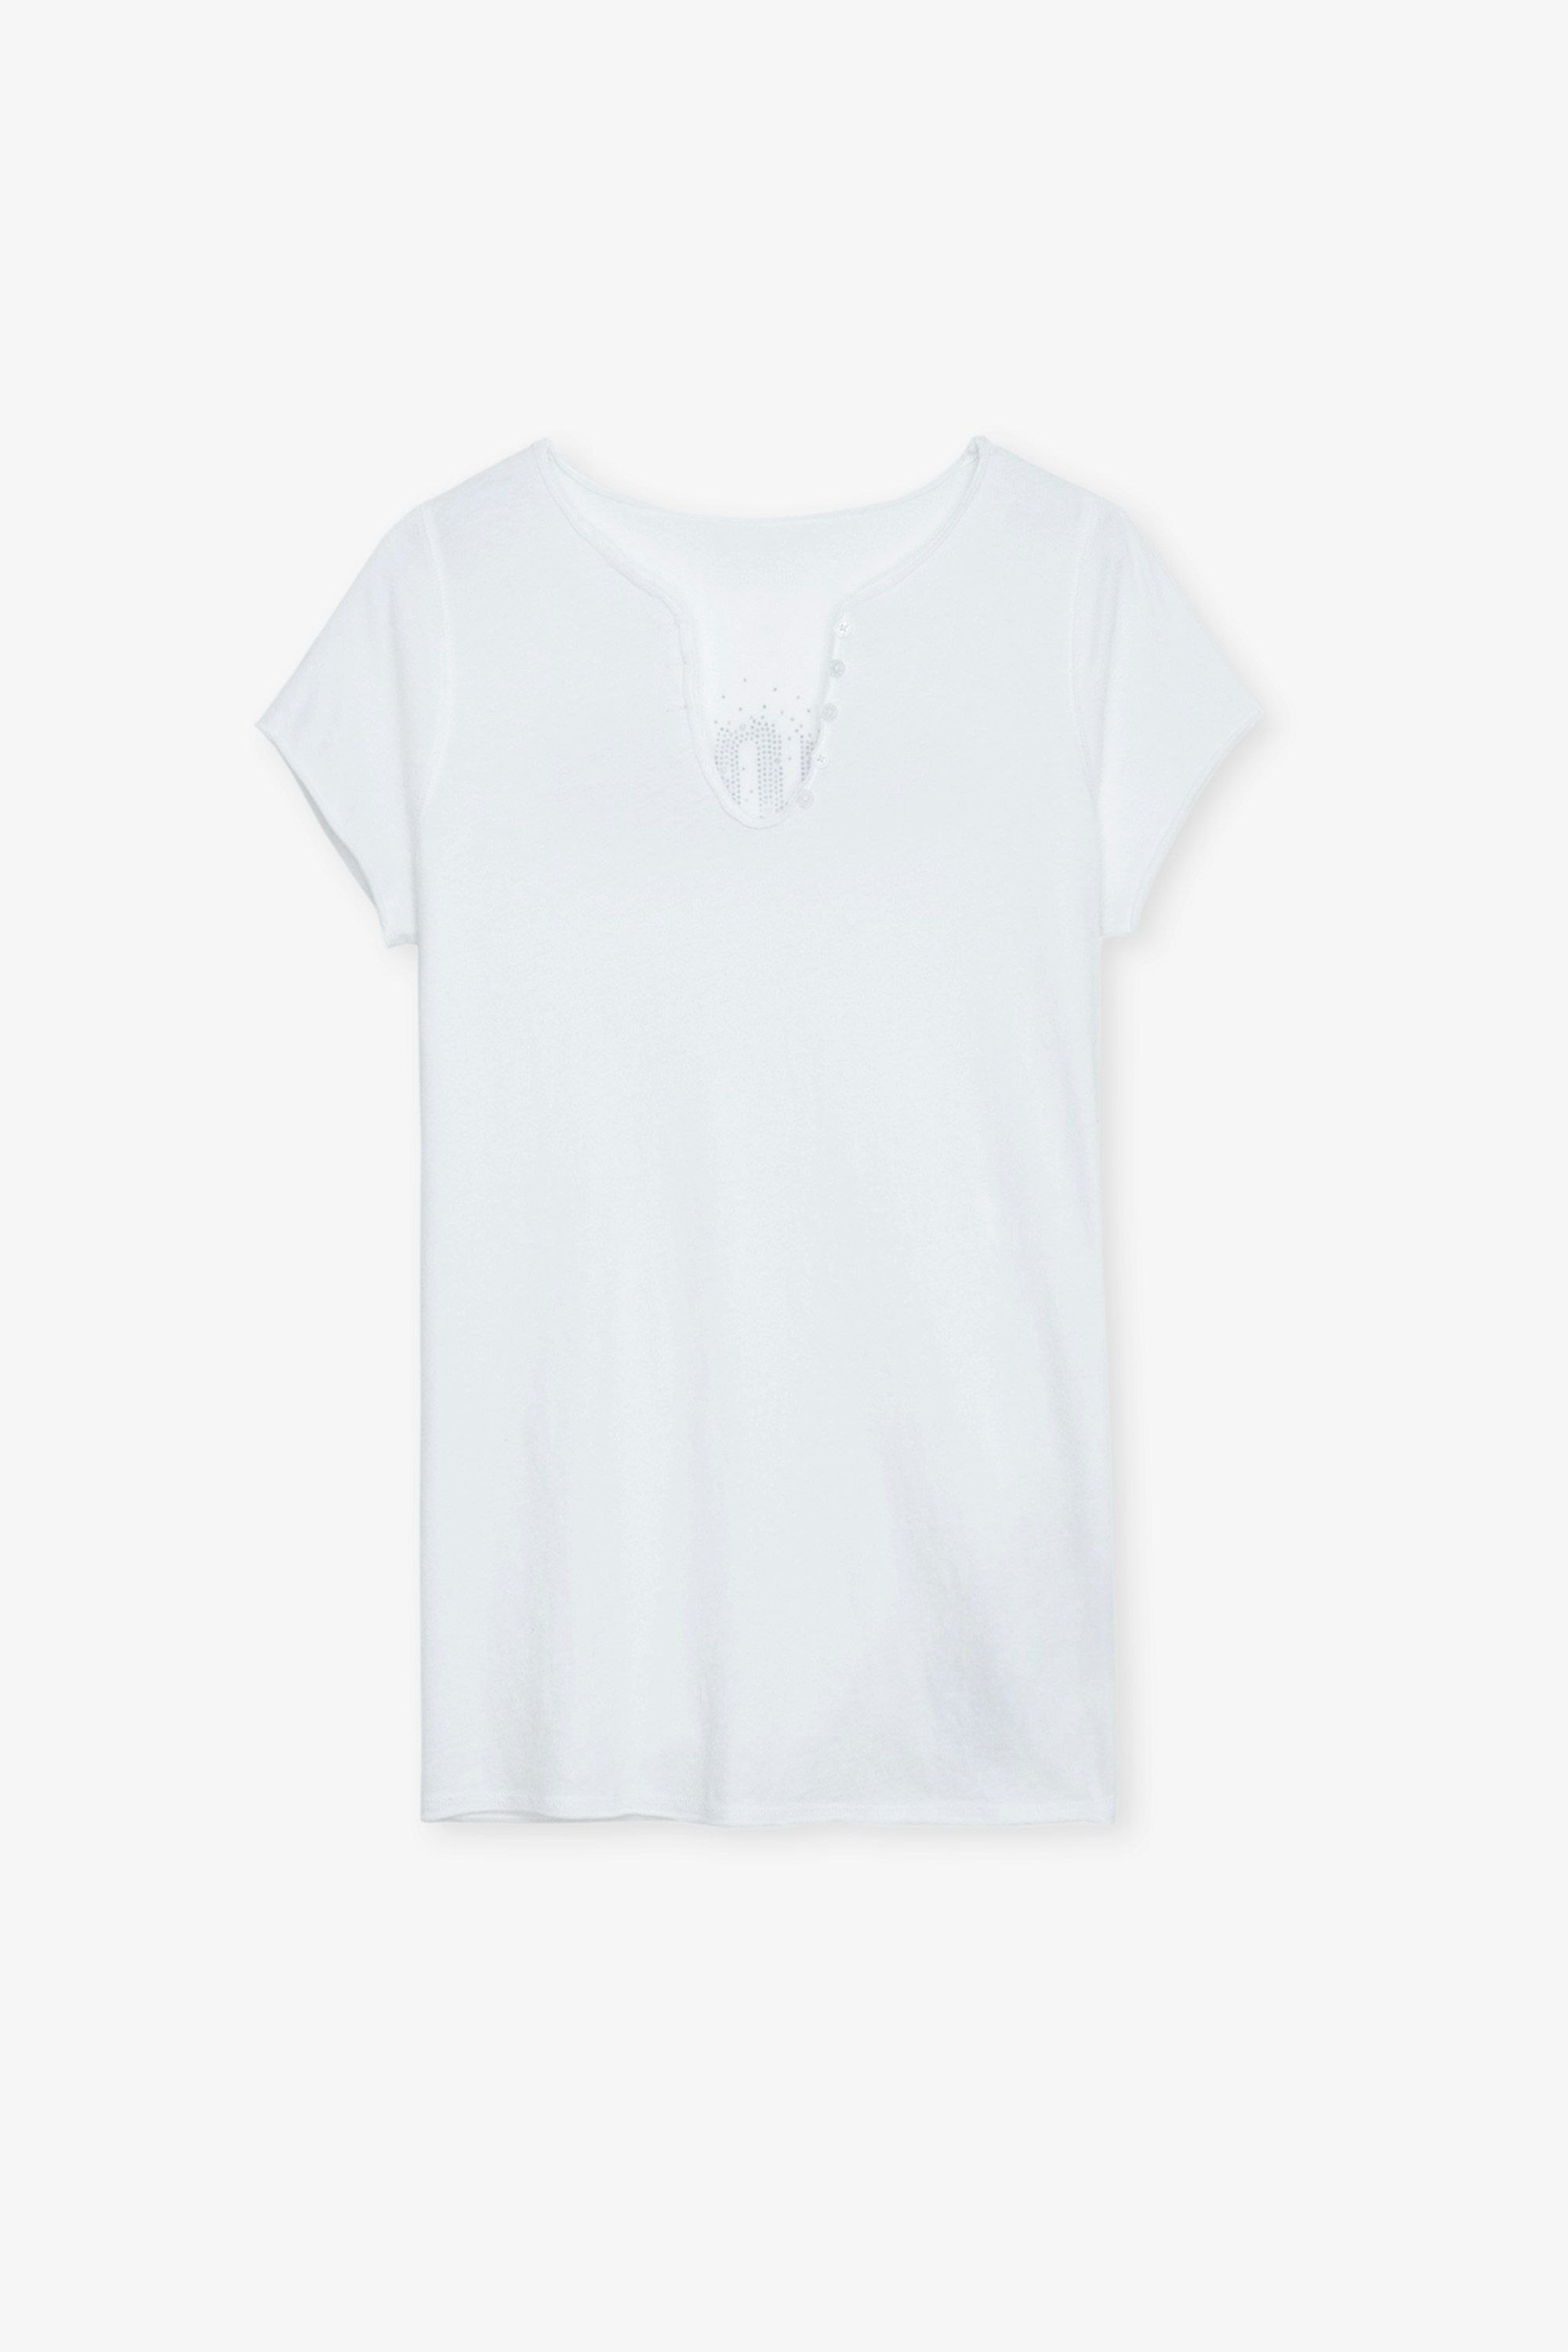 Tunisien Amour Strass - T-shirt tunisien en coton blanc orné d'une inscription "Amour" en strass au dos.